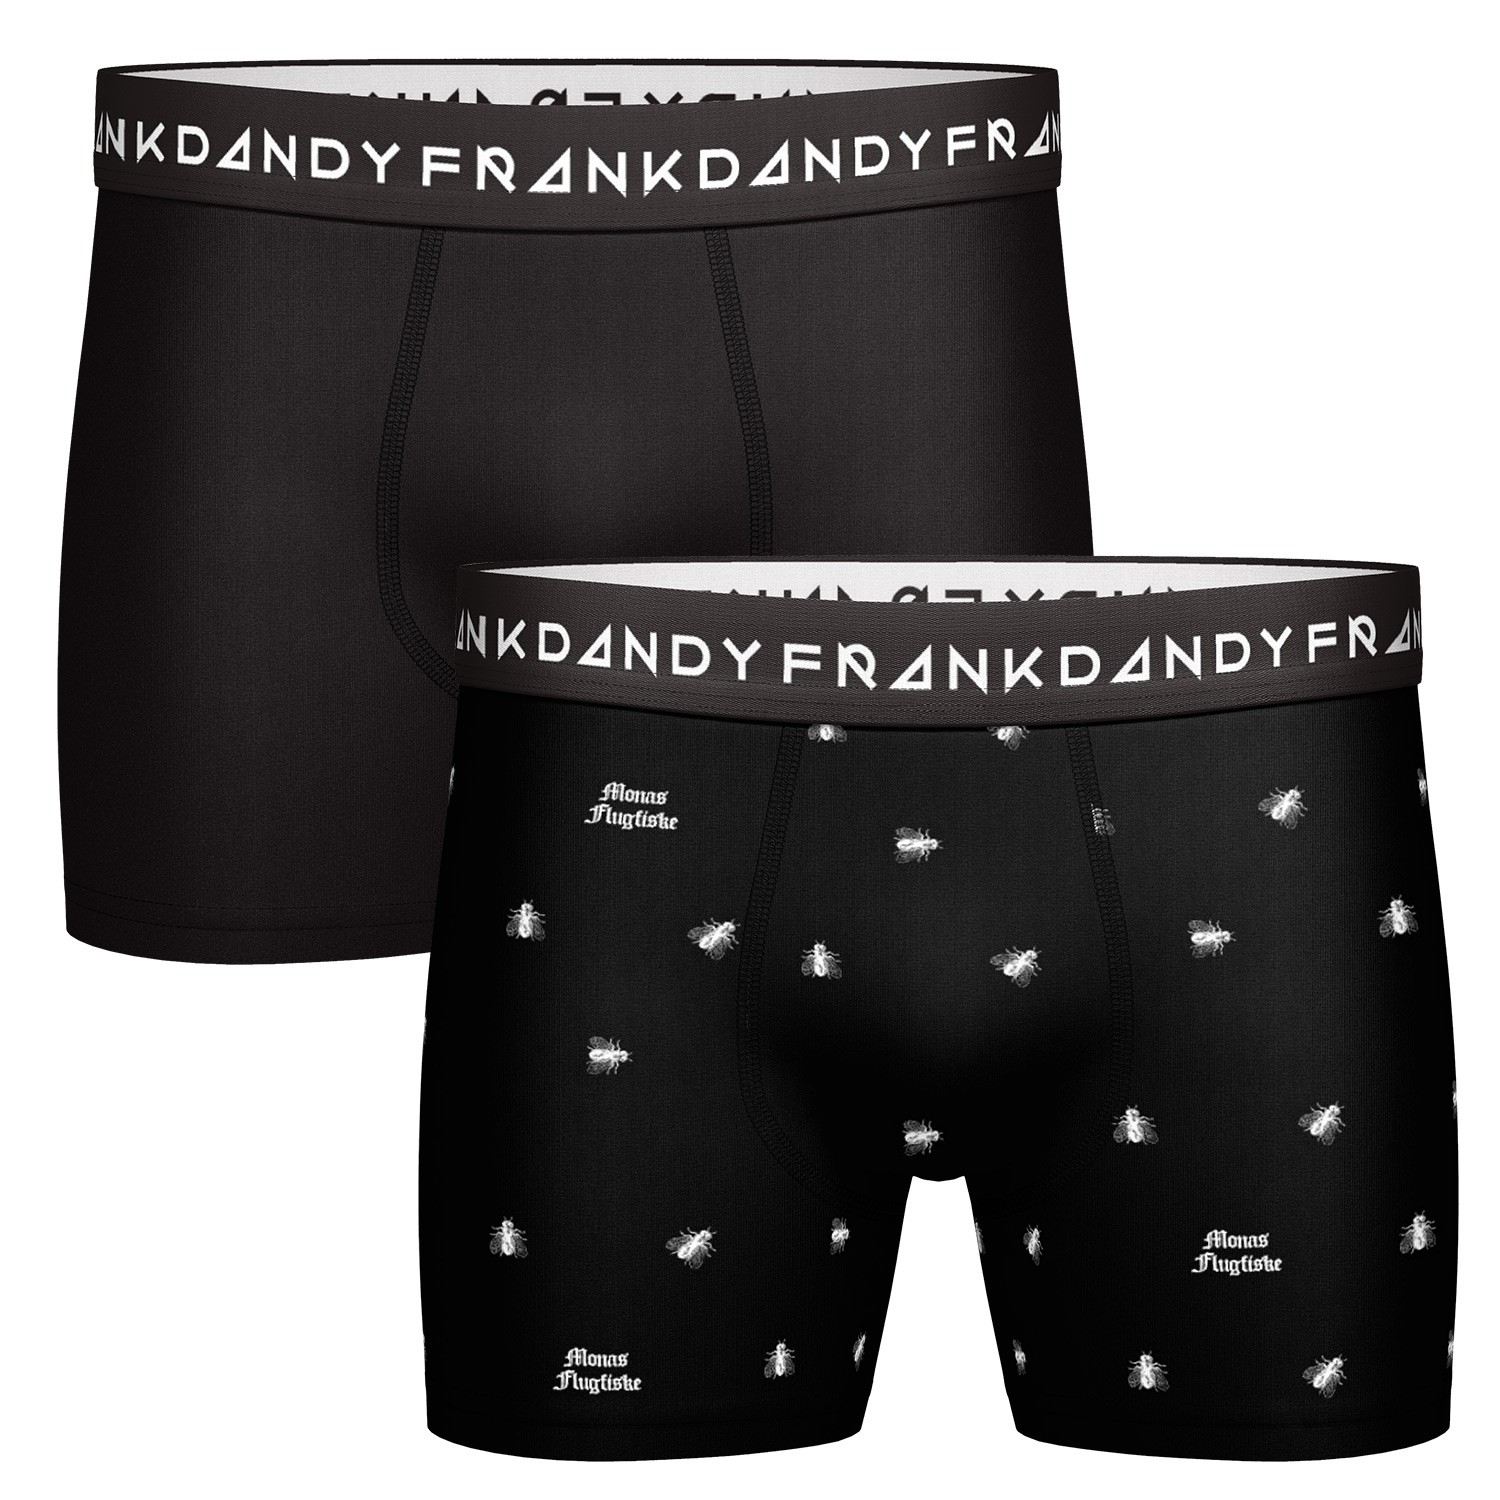 Frank Dandy Flugan Boxers